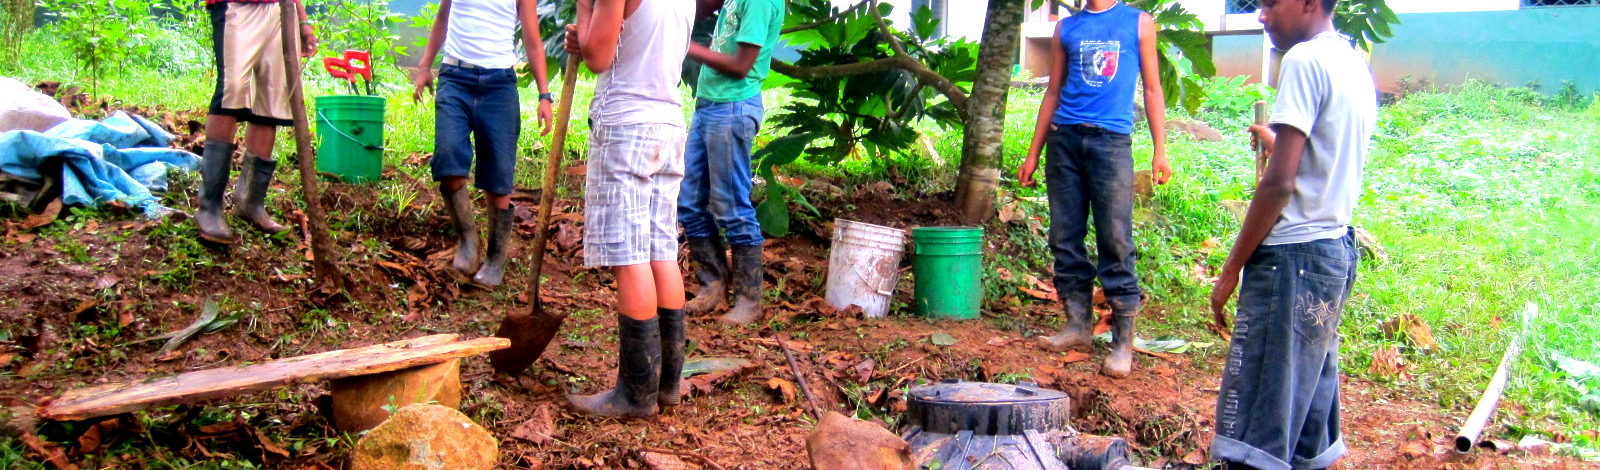 Des communautés nicaraguayennes assurent leur sécurité alimentaire dans le respect des ressources natuelles